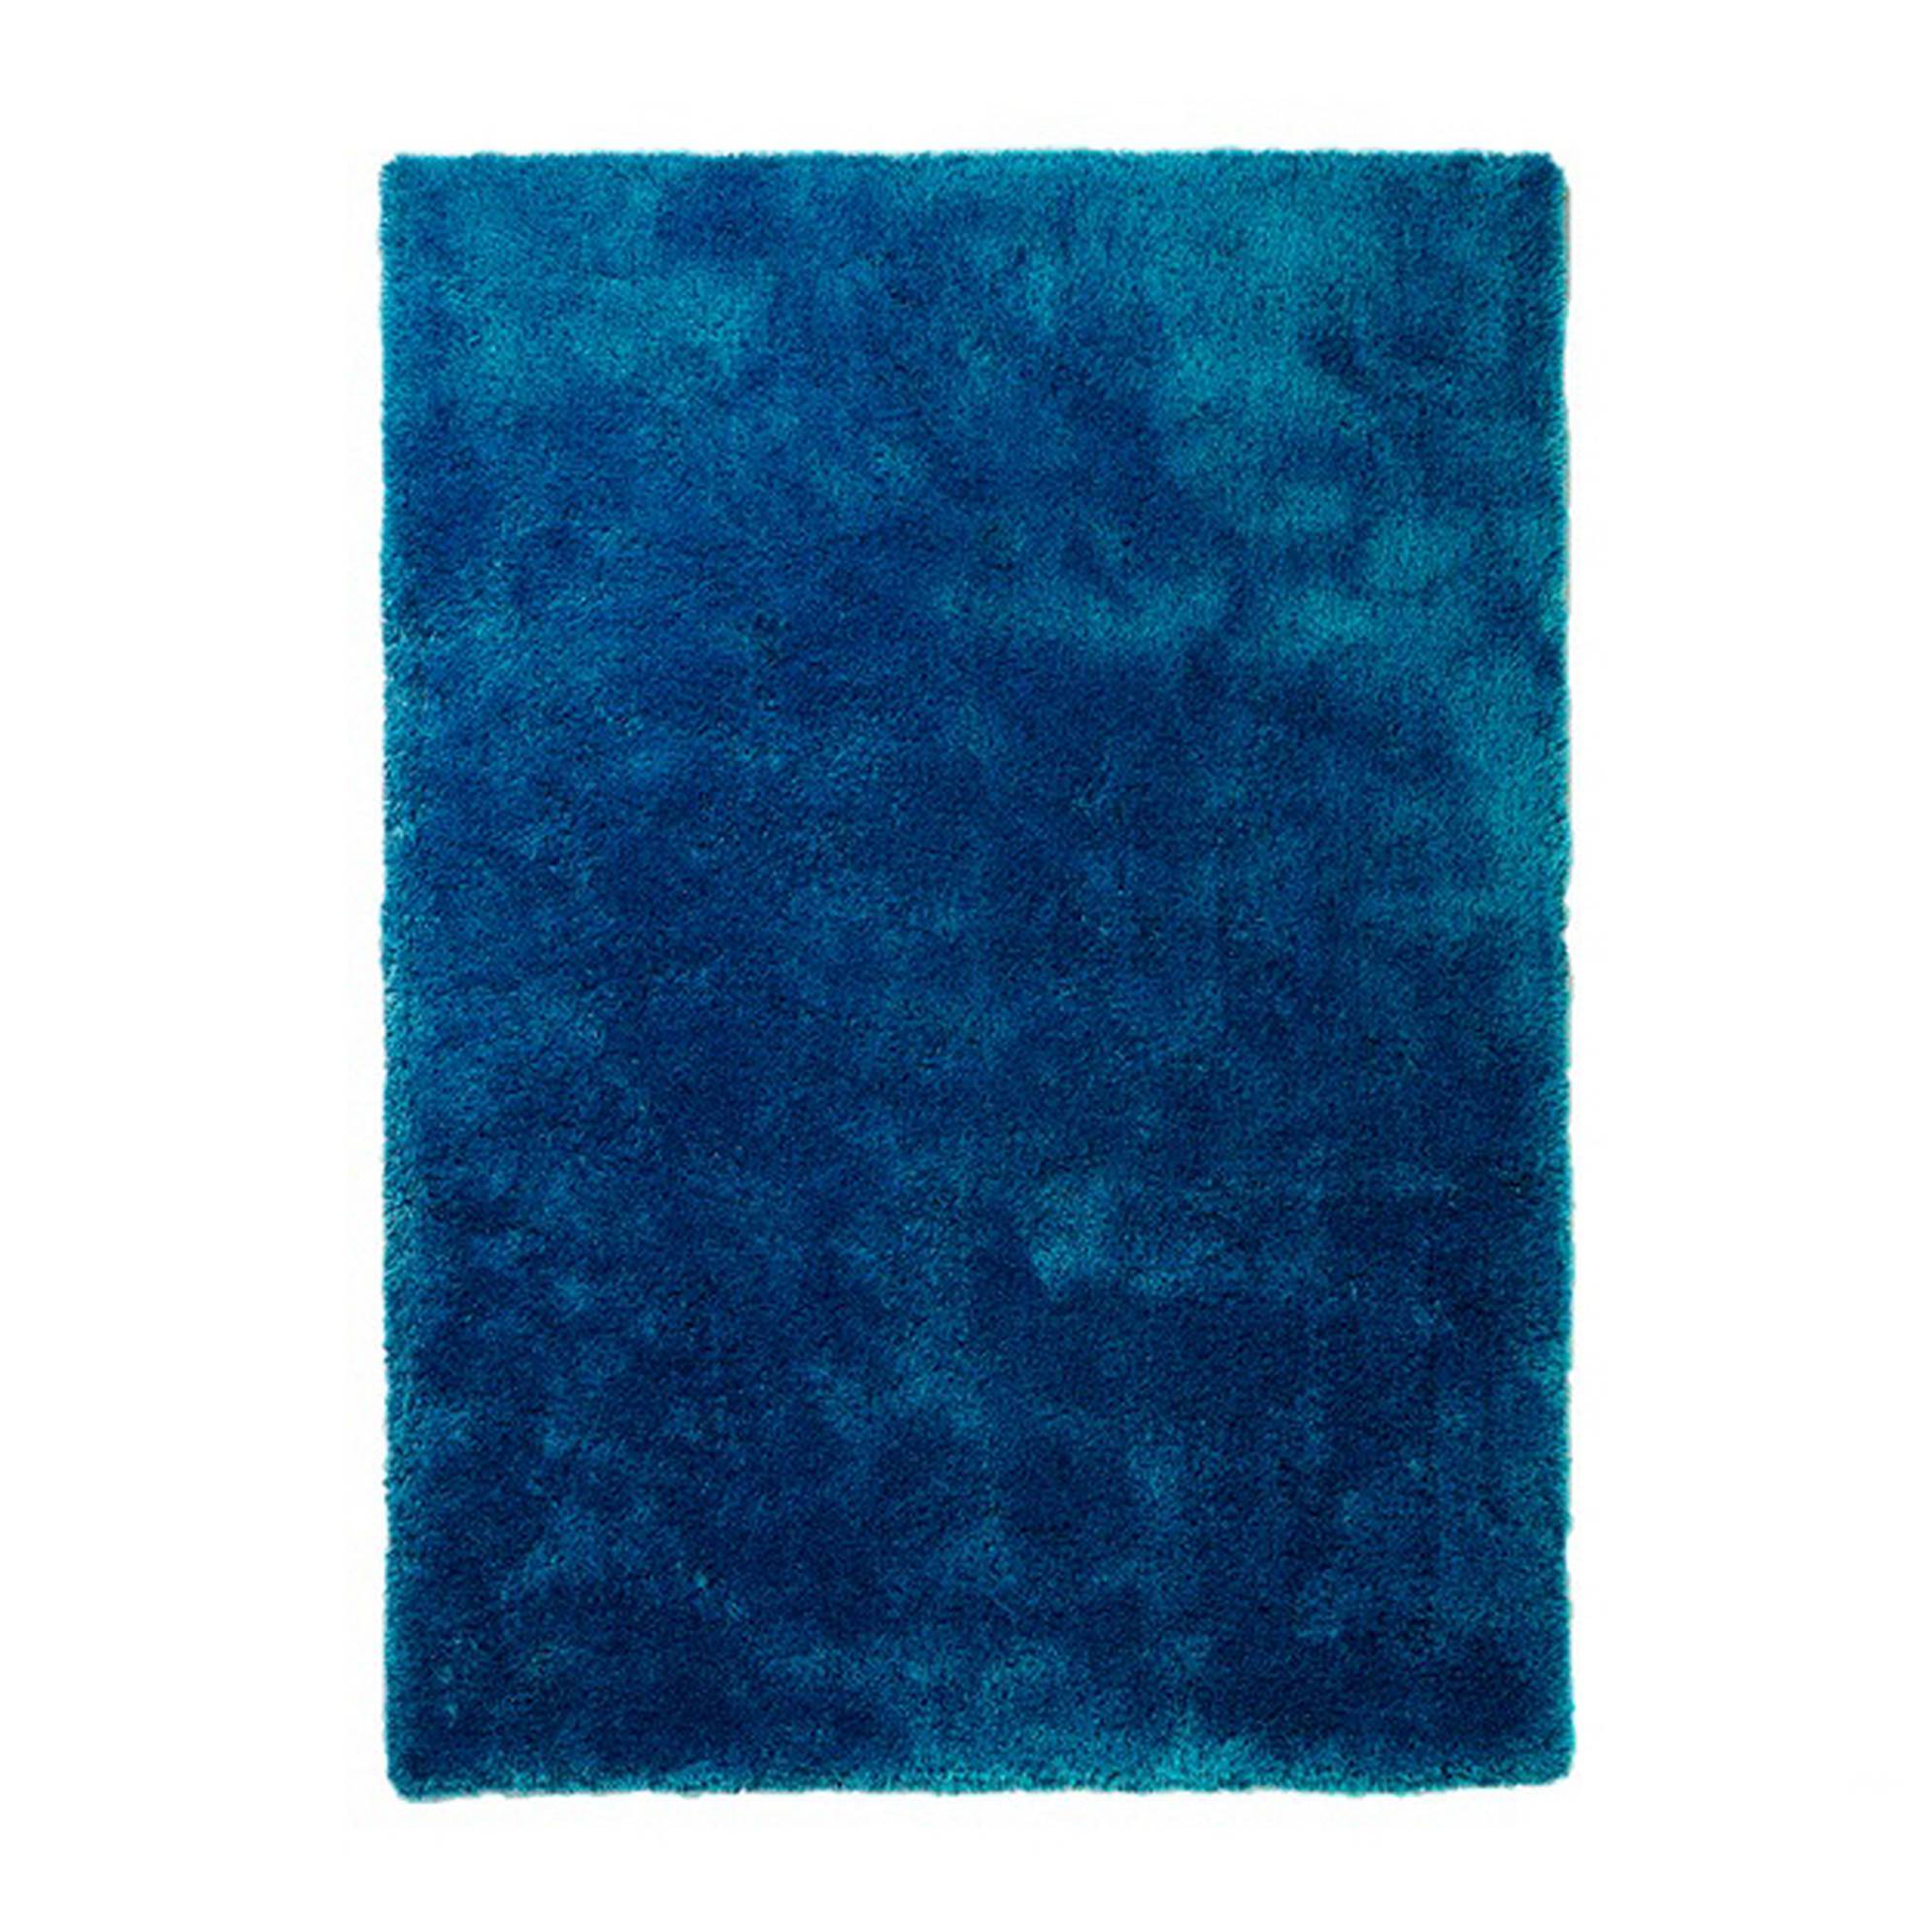 Teppich Estero - Blau - 70 x 140 cm, Colourcourage